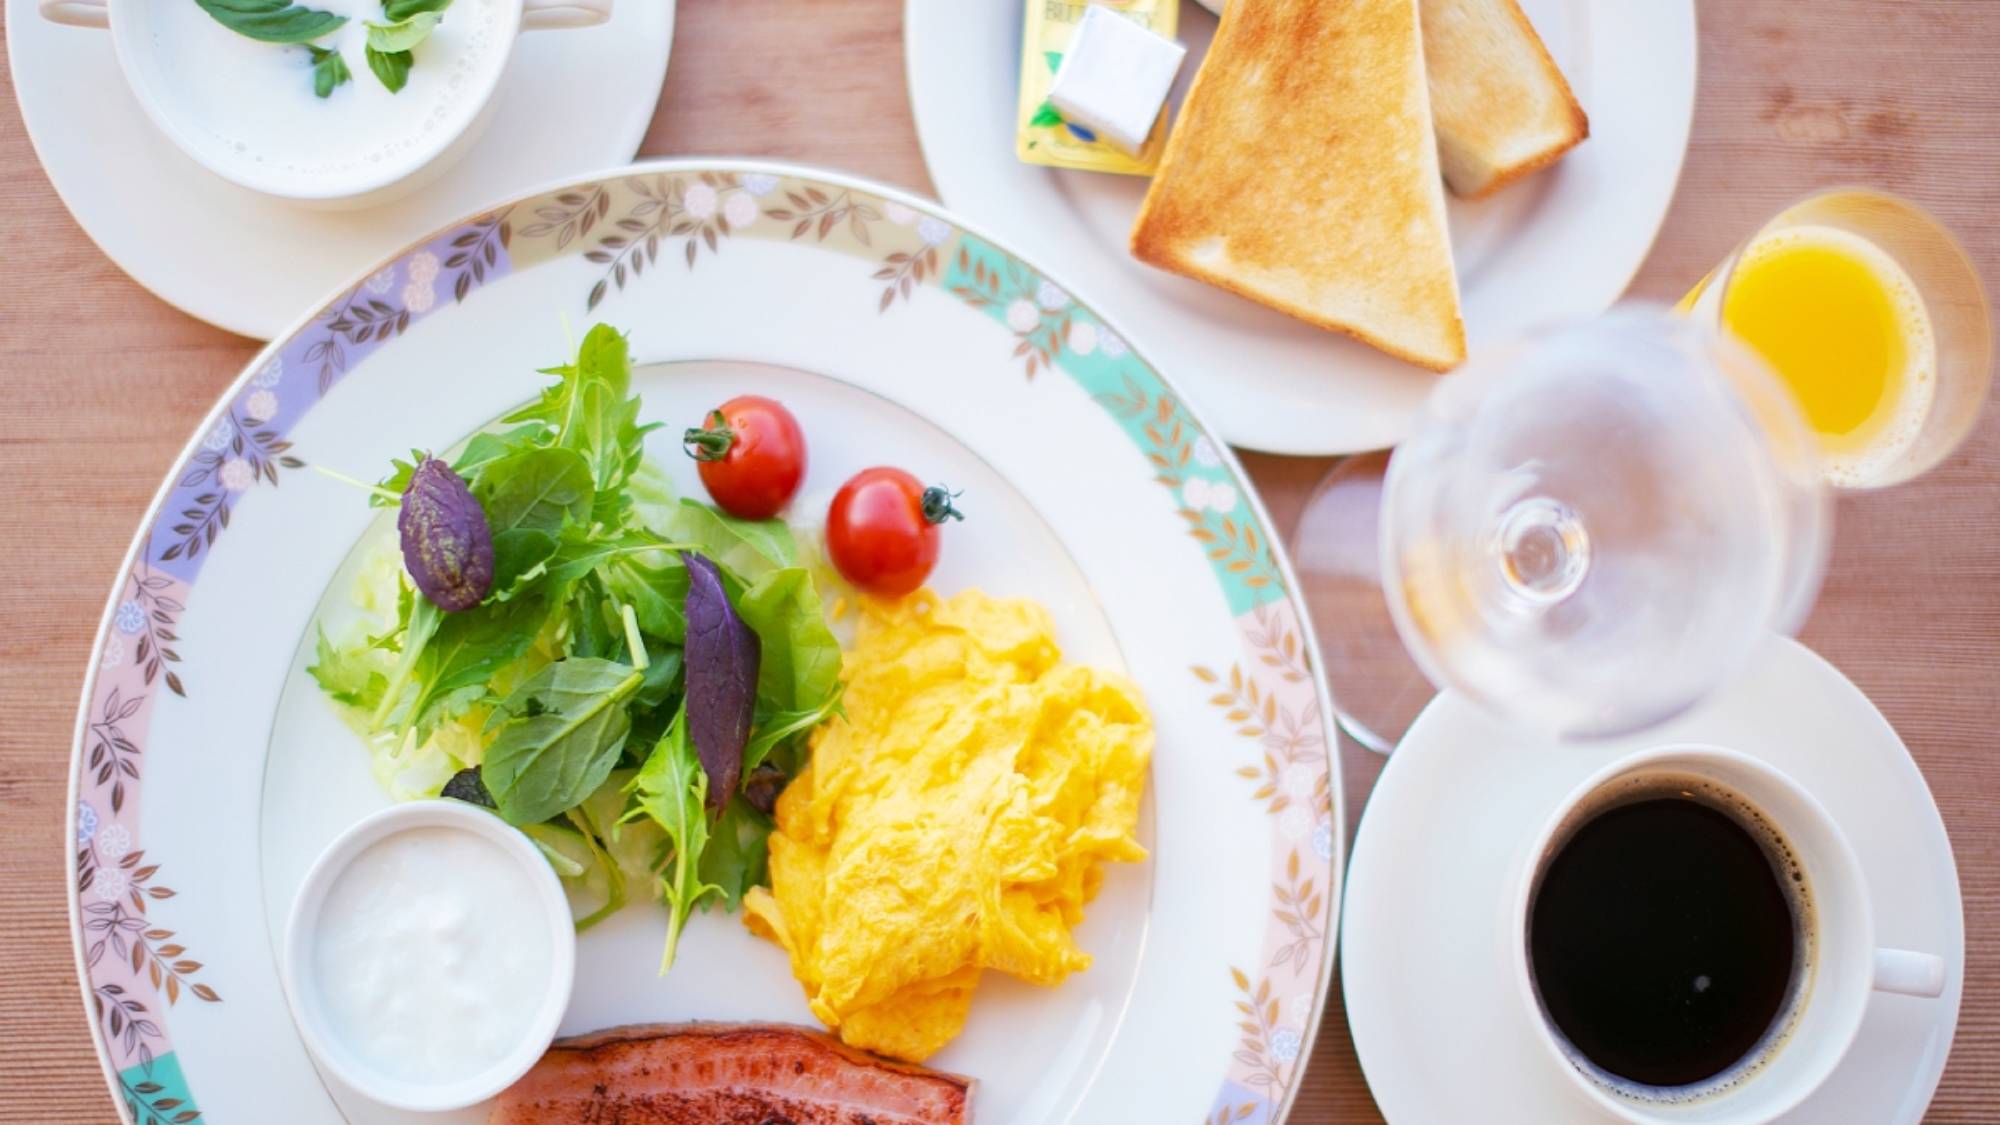 【朝食】地元食材を生かした、優しい味わいの朝食。木漏れ日差し込む朝陽とともに贅沢な朝をお迎えください